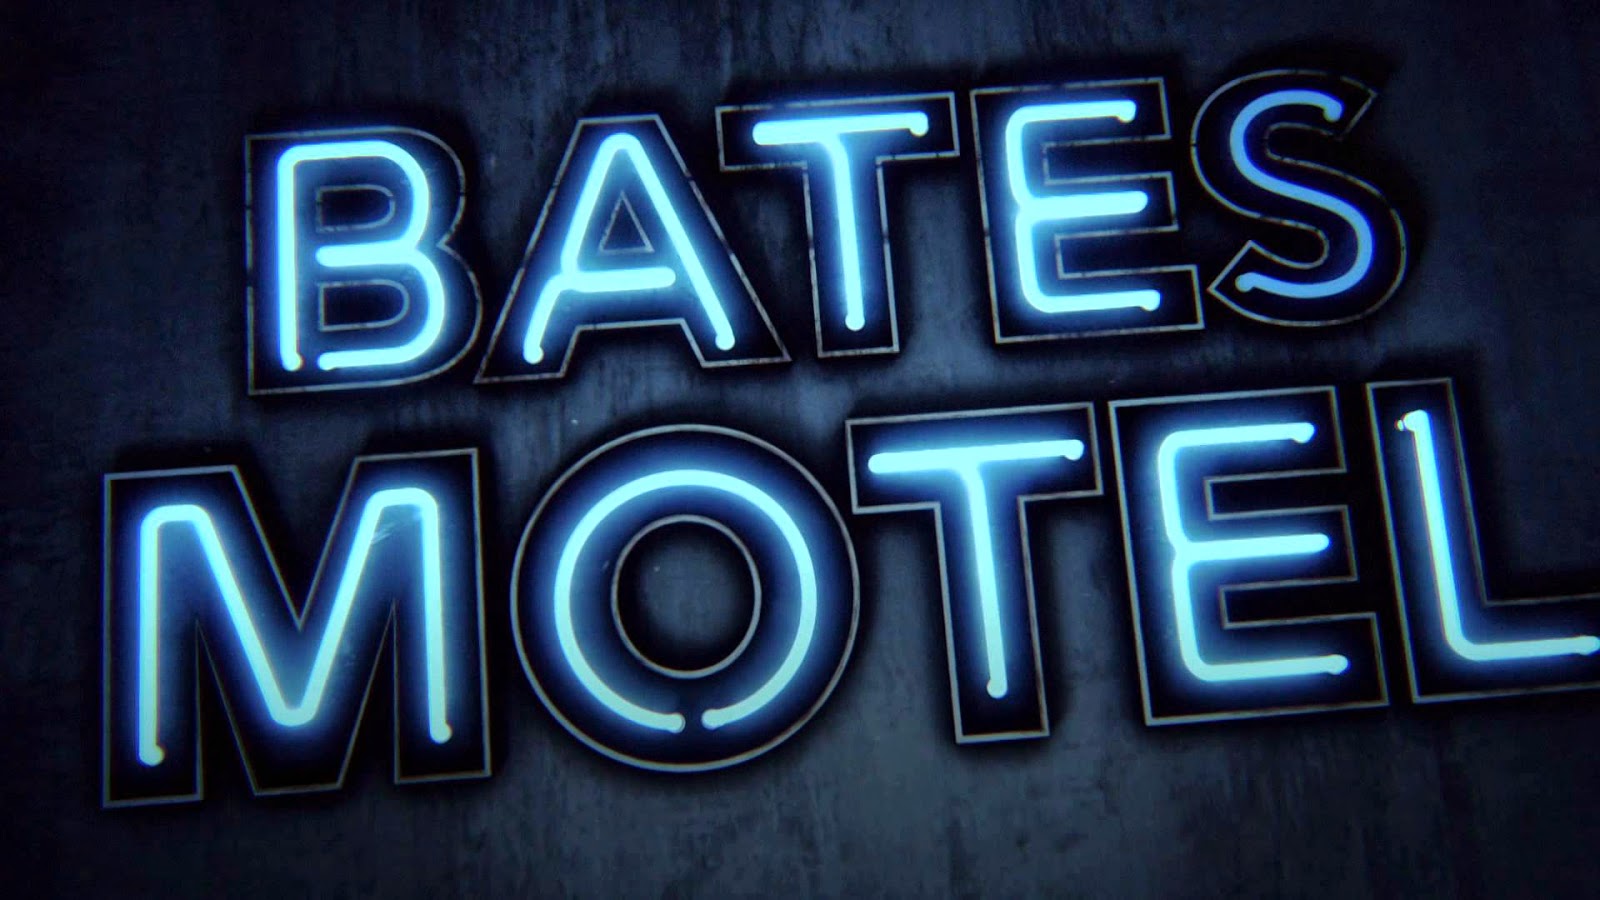 Schaut ihr die Serie "Bates Motel"?